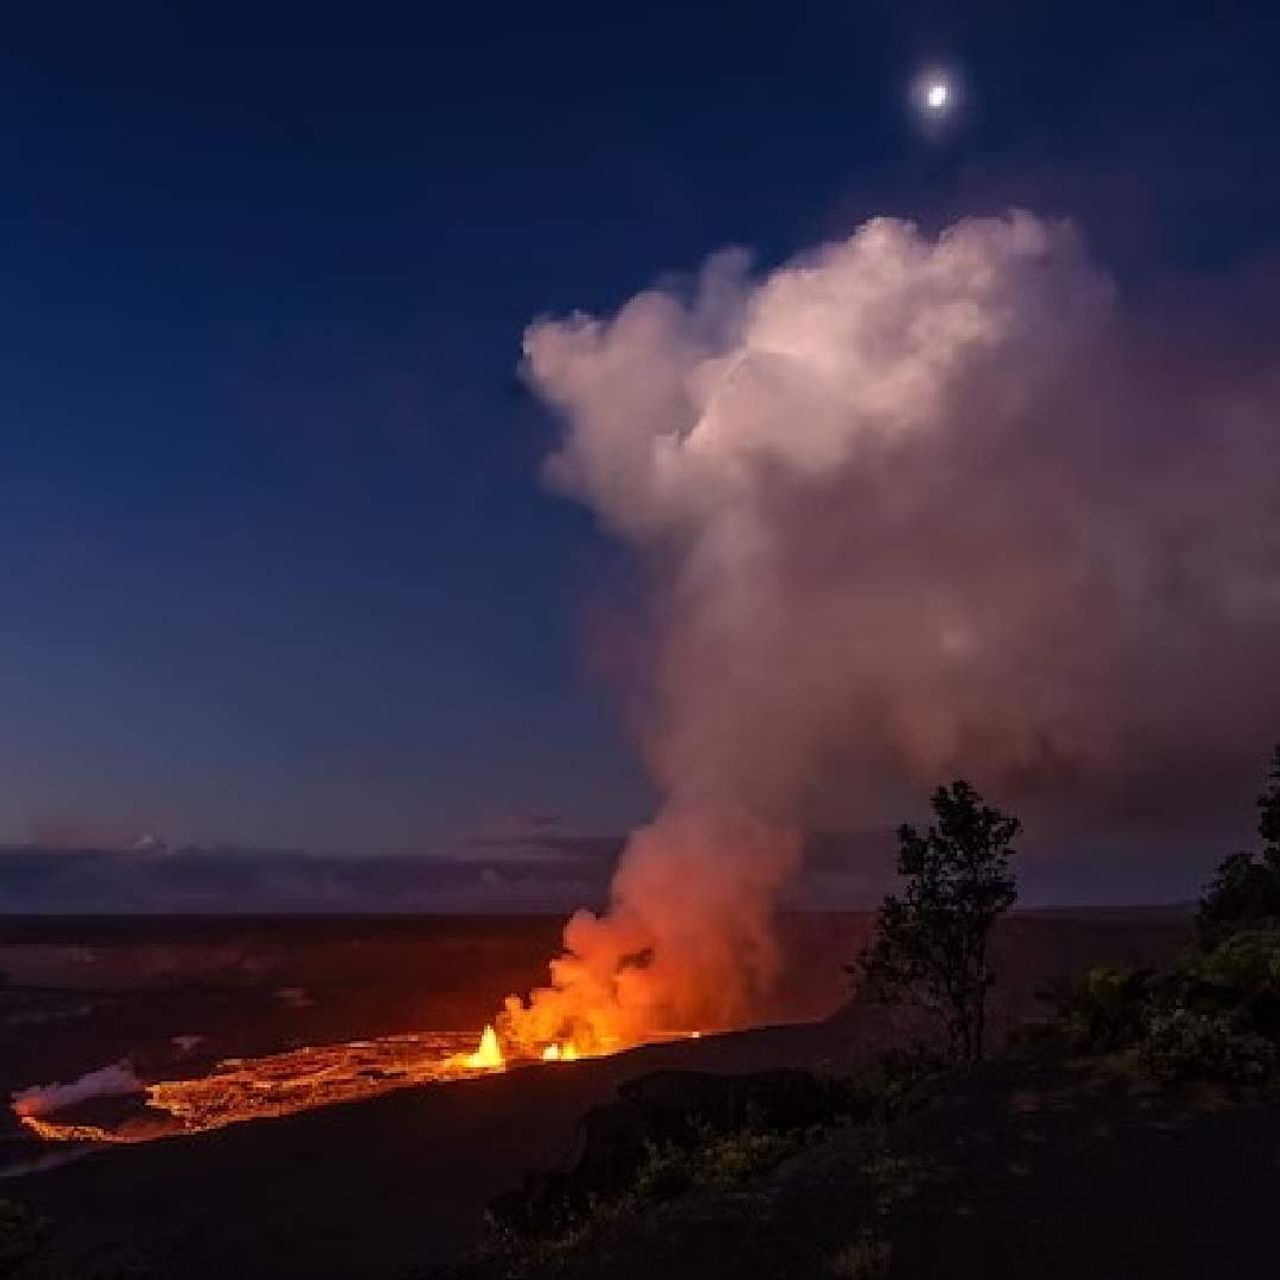 किलाउआ जगातील सर्वात सक्रीय ज्वालामुखींपैकी एक आहे. तीन महिन्यानंतर पुन्हा ज्वालामुखी सक्रीय झाला. लाव्हारसाची अप्रतिम दृश्य दिसले. हा मोठा बेट राष्ट्रीय उद्यानात आहे. (सर्व फोटो एपी)